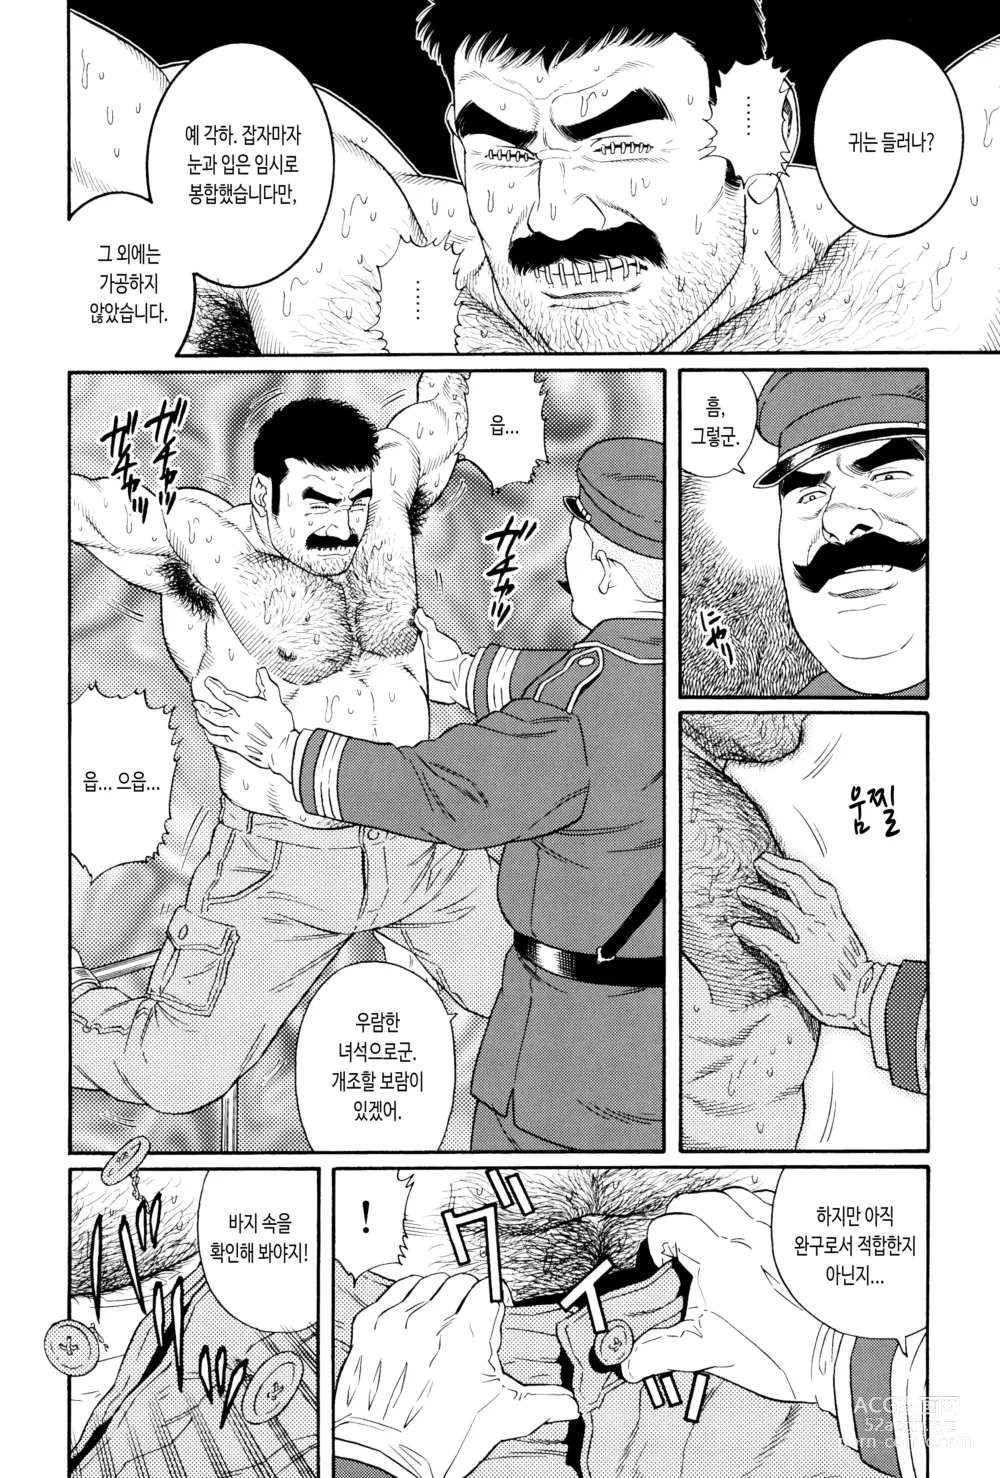 Page 4 of manga ZENITH